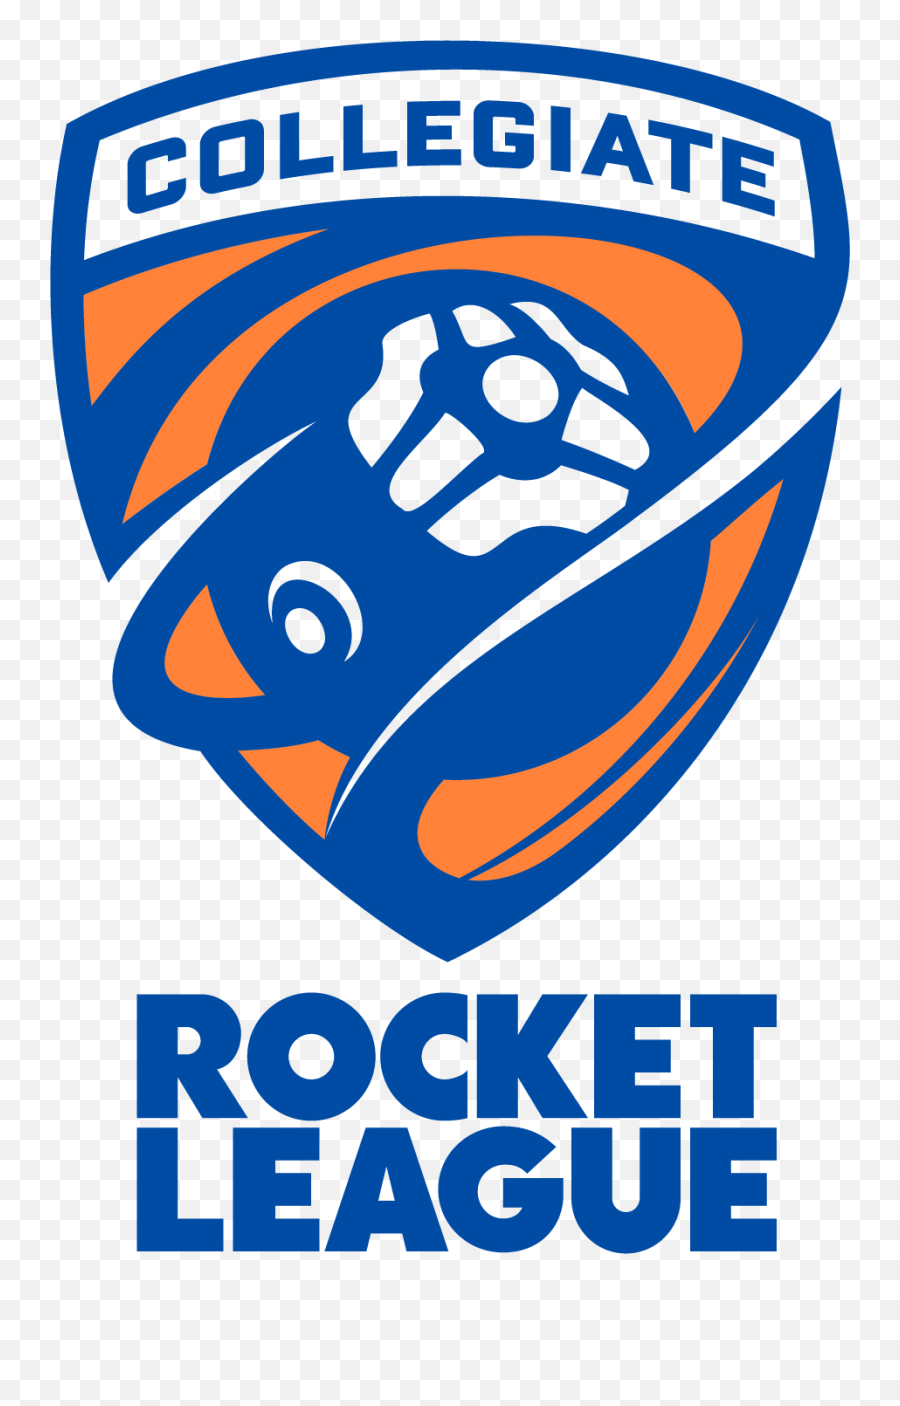 Collegiate Rocket League - Crl Logo Rocket League Png,Rocket League Logo Png